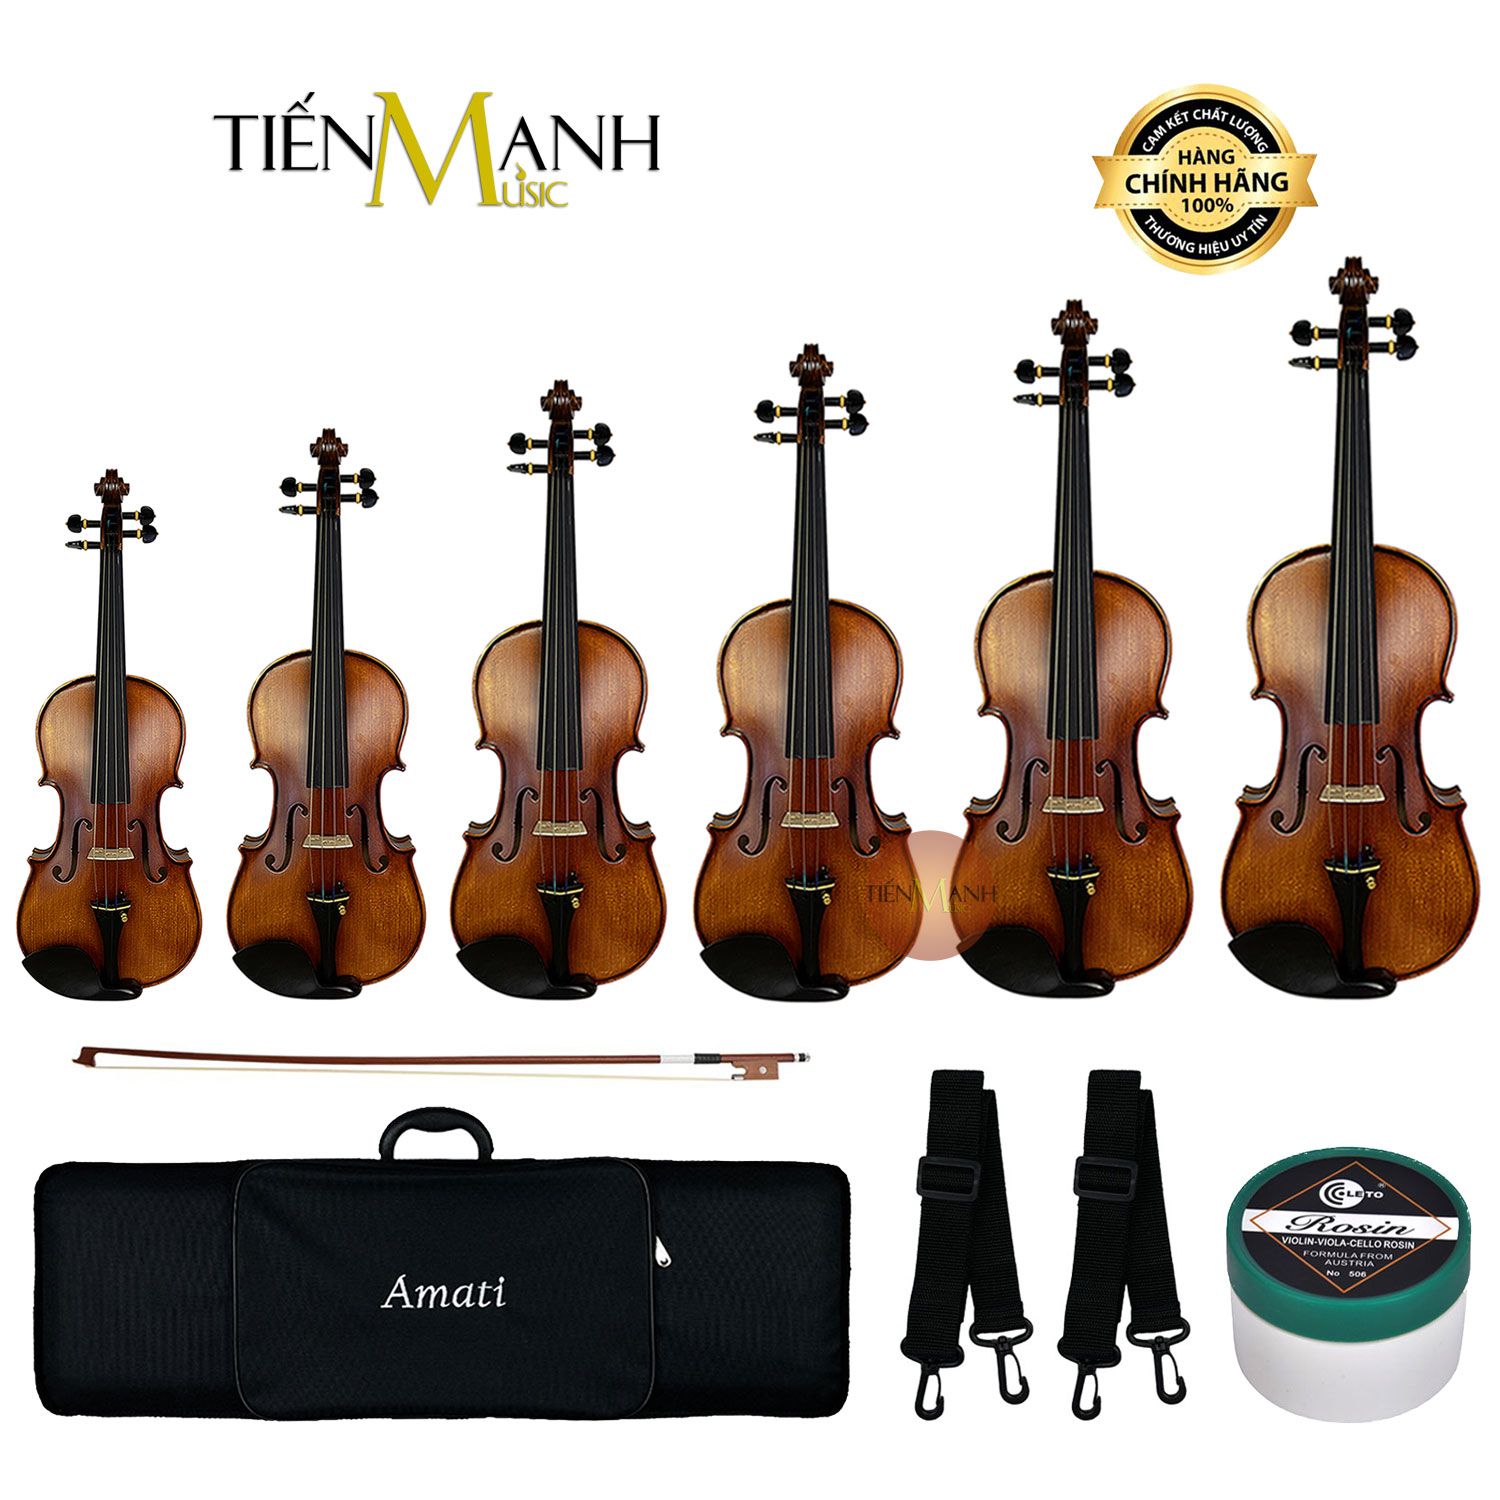 Đàn Violin Amati Vân Vẽ VM118 Size 4-4, 3-4, 1-2, 1-4, 1-8, 1-10, 1-16 - Vĩ Cầm VM-118 Vi-ô-lông Violon